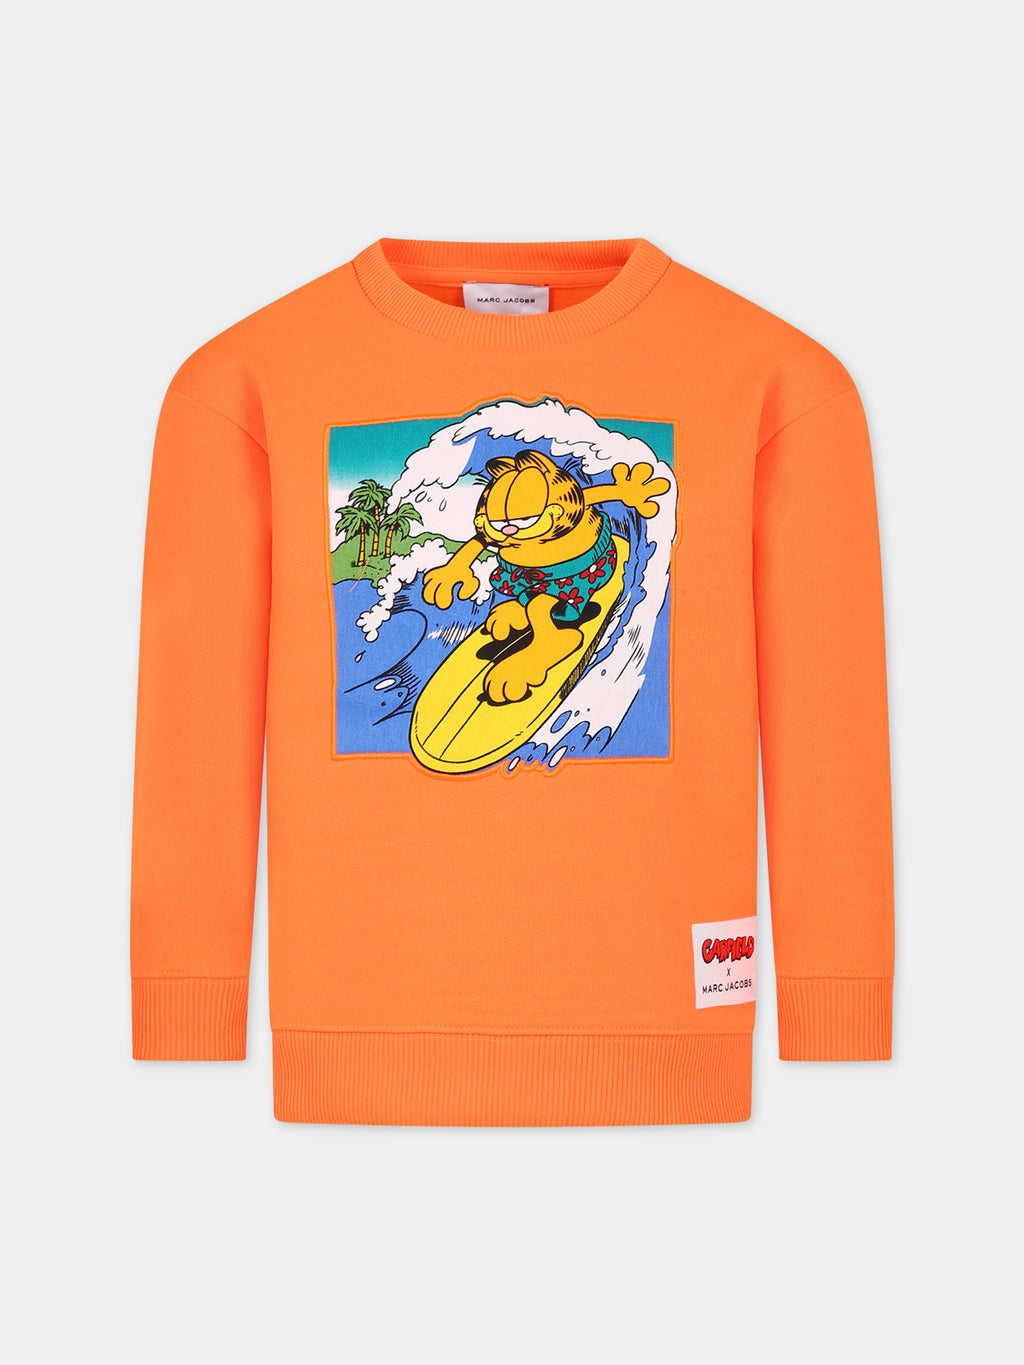 Sweat-shirt orange pour garçon avec Garfield